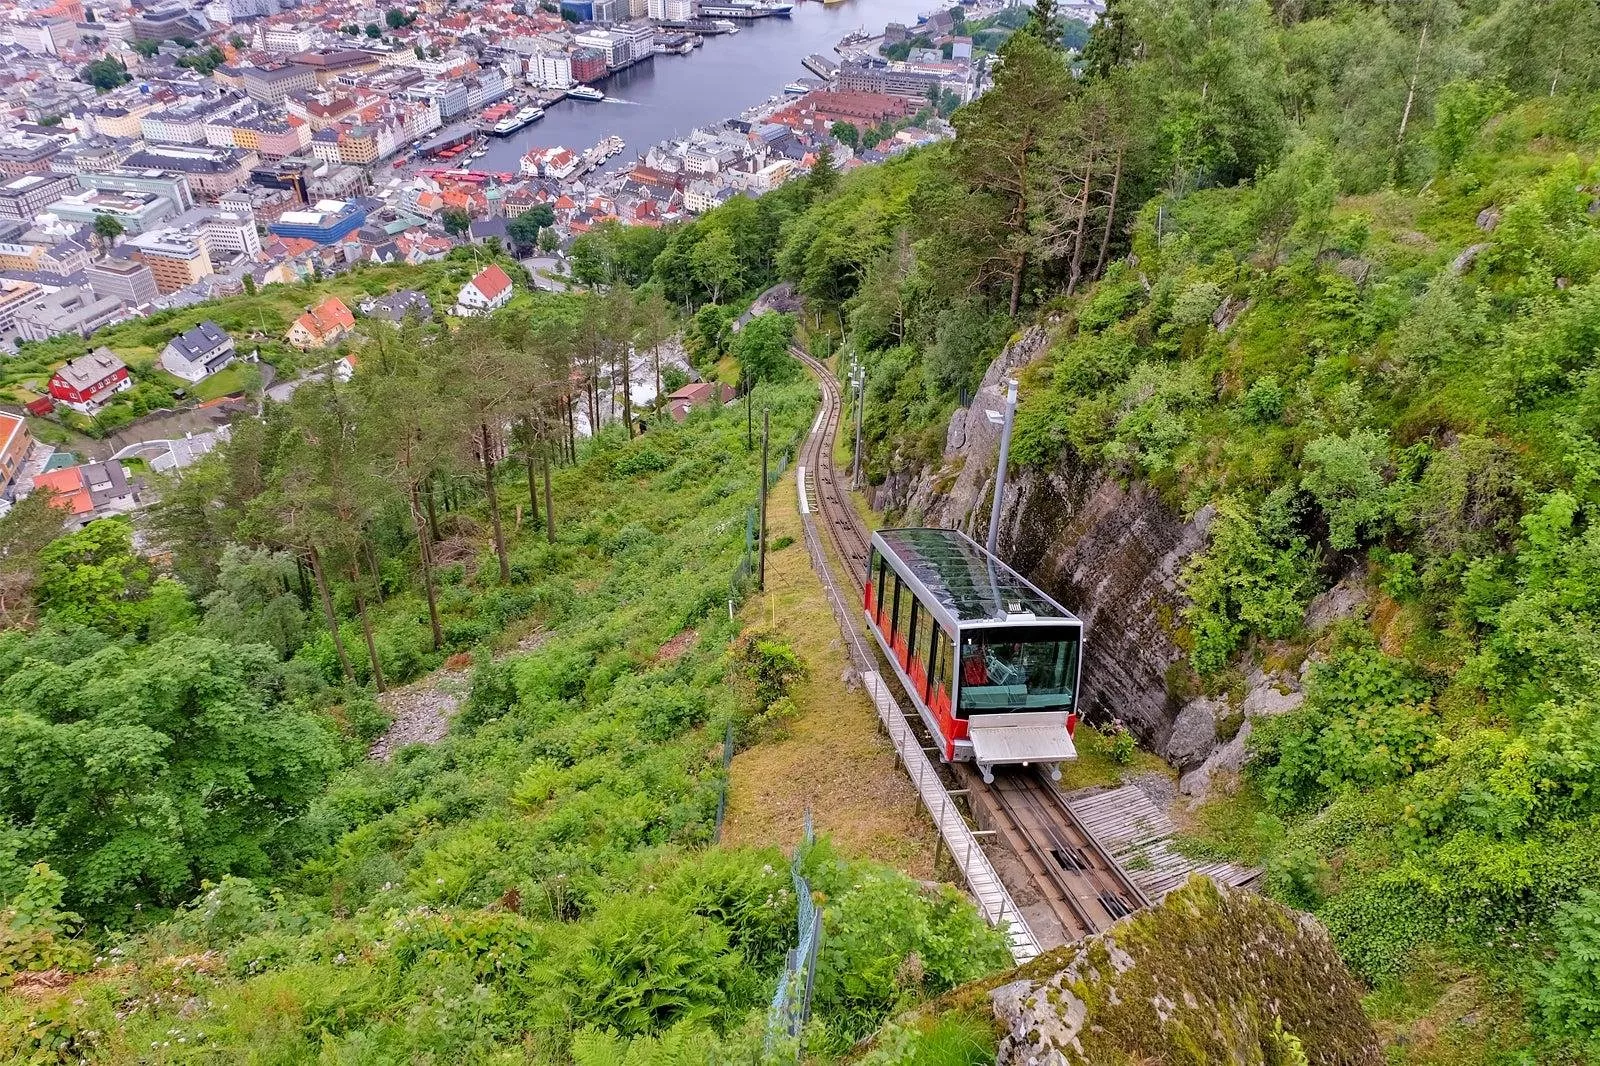 السياحة في النرويج: أفضل 10 وجهات سياحية ستجعلكِ ترغبين بالسفر إليها